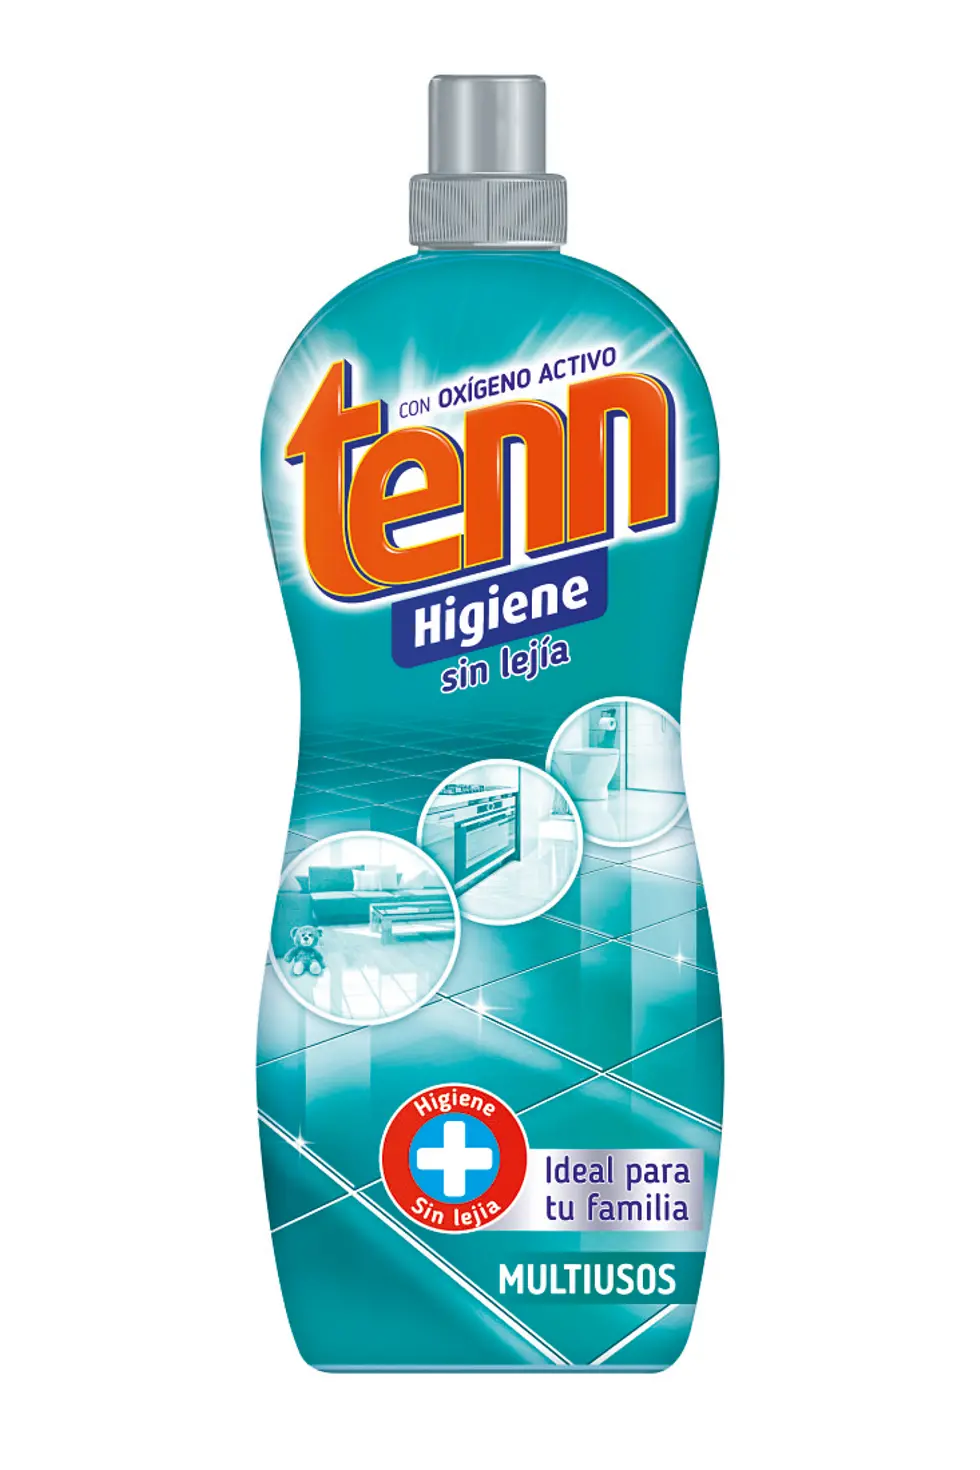 Tenn Higiene